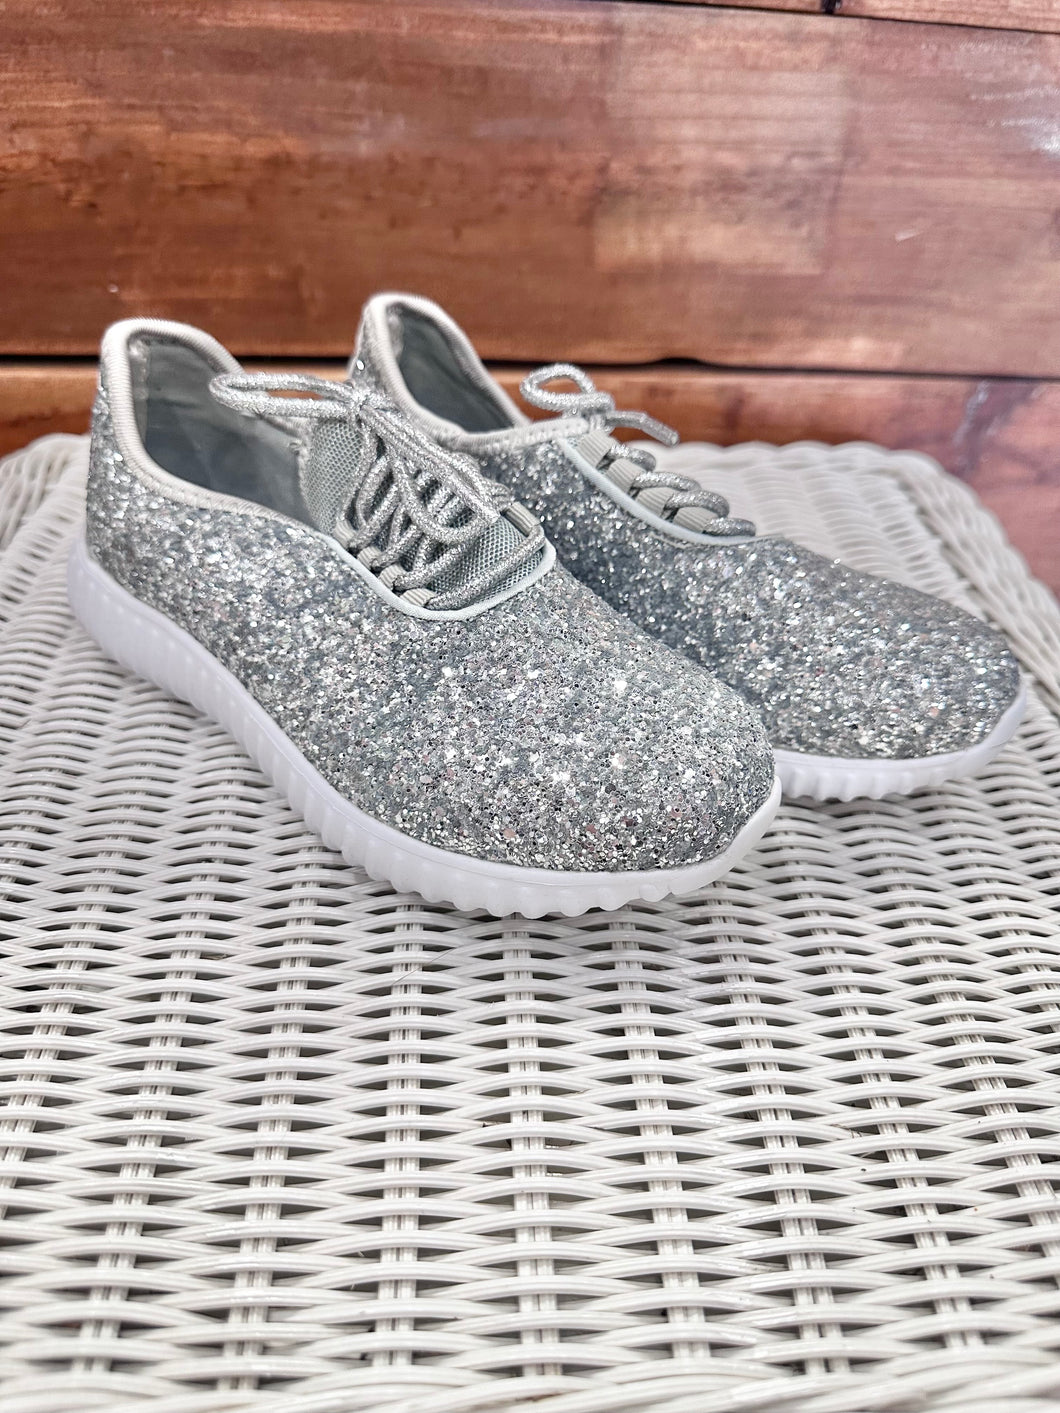 Weissman Sparkle Pop Dance Sneaker Size 3